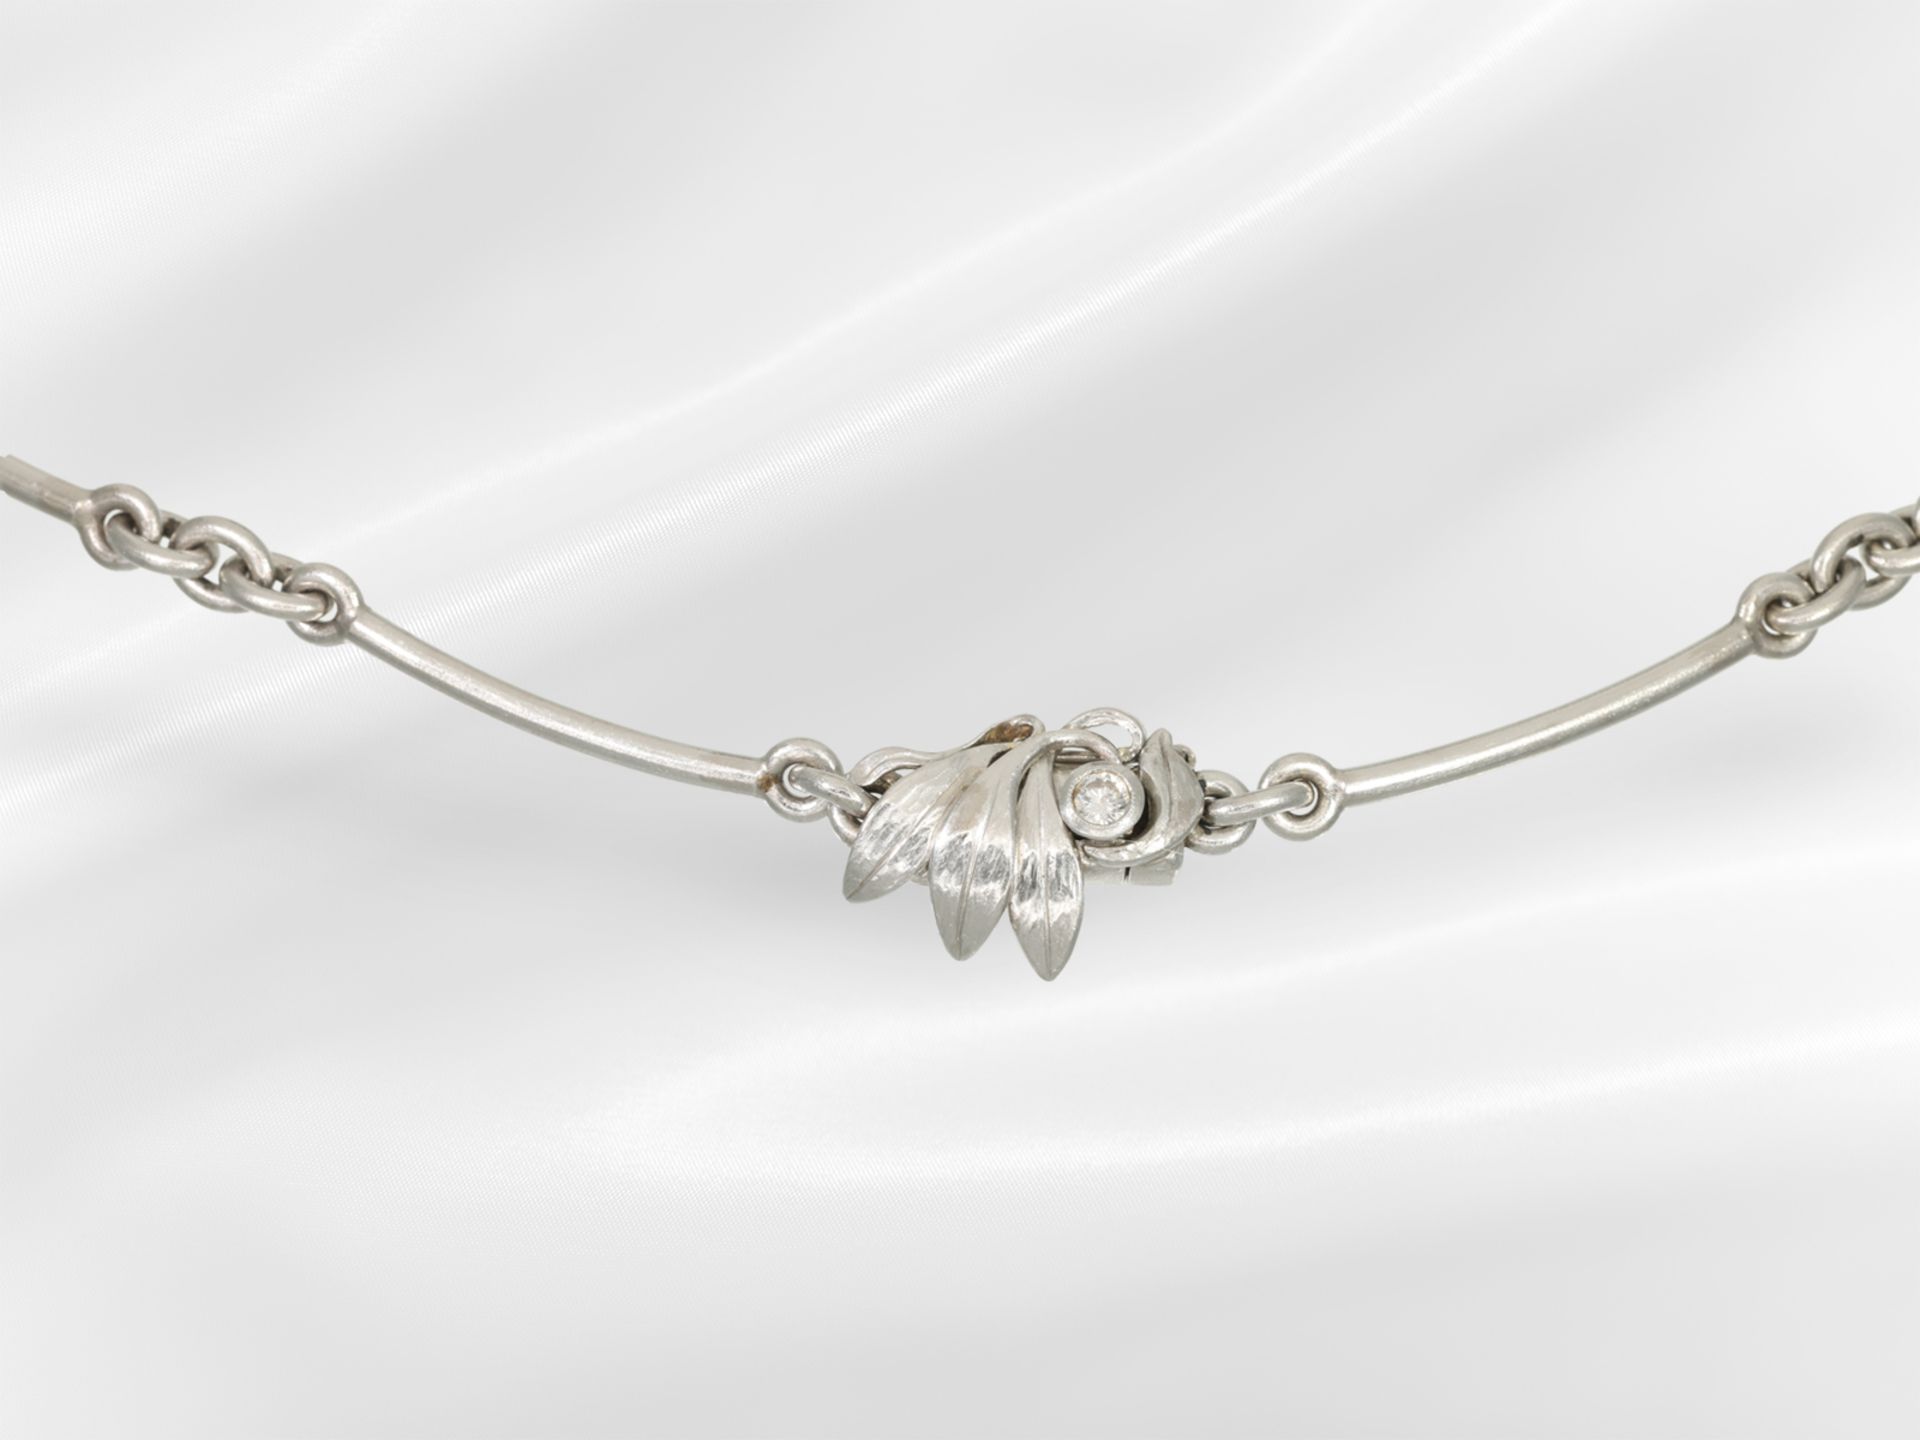 Chain/necklace: important platinum goldsmith jewellery, unique, aquamarine of 102ct - Image 3 of 3